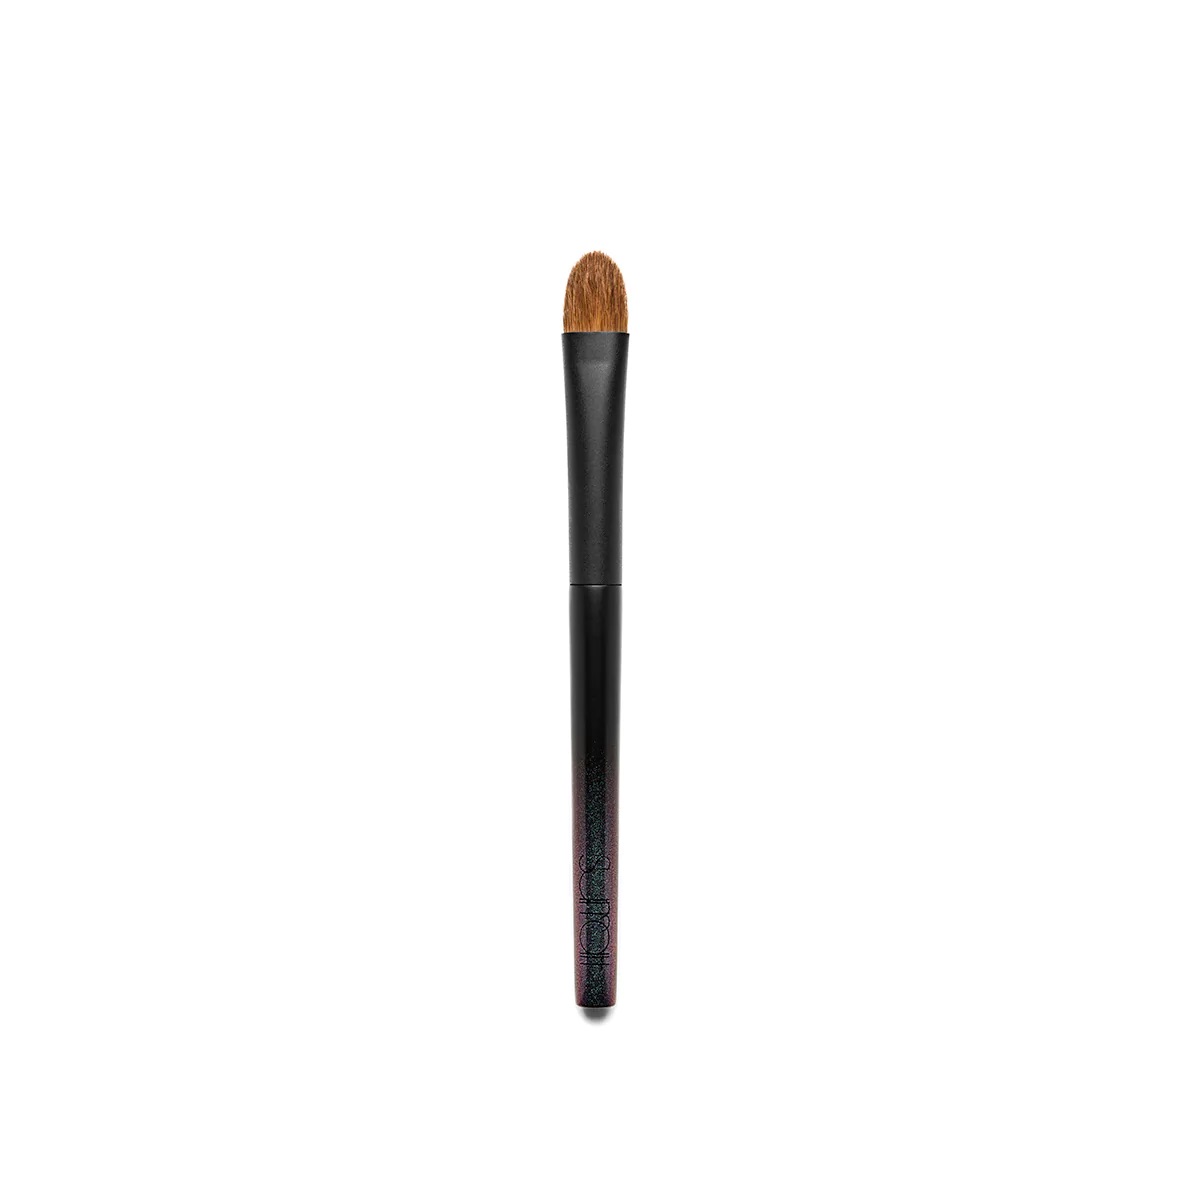 A black Surratt complexion brush.